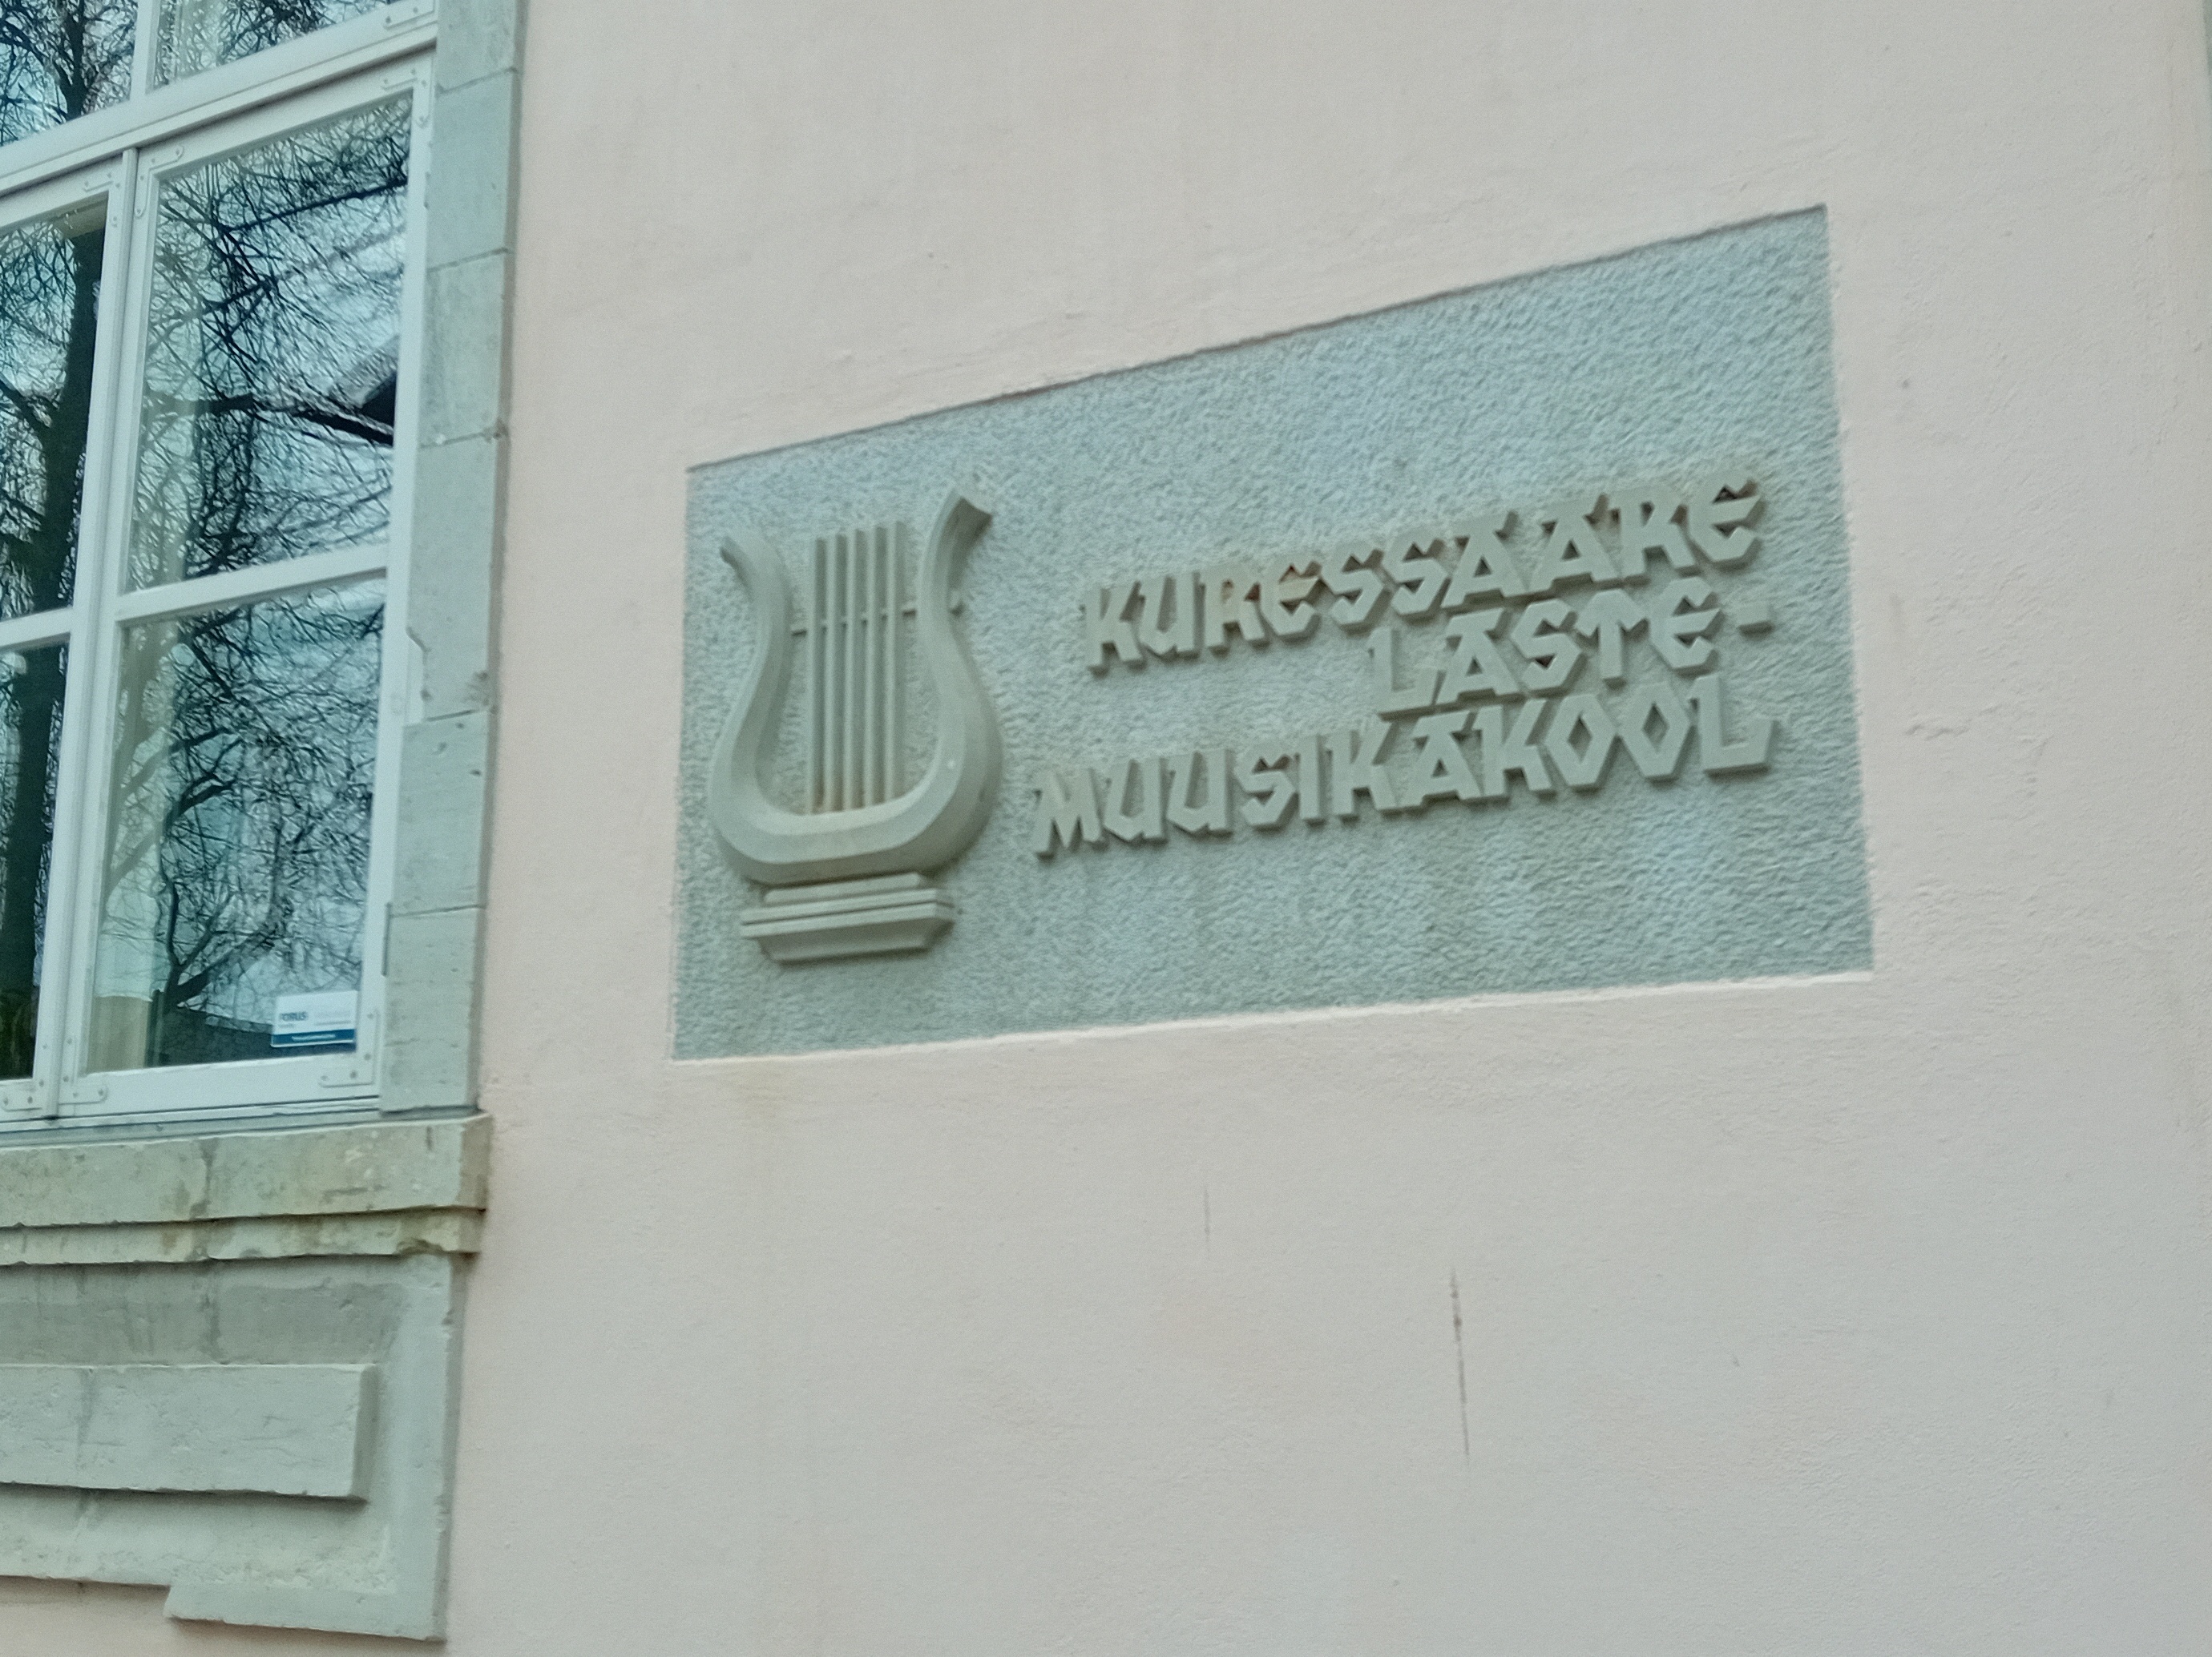 Saaremaa. Kingissepa children's music school. rephoto